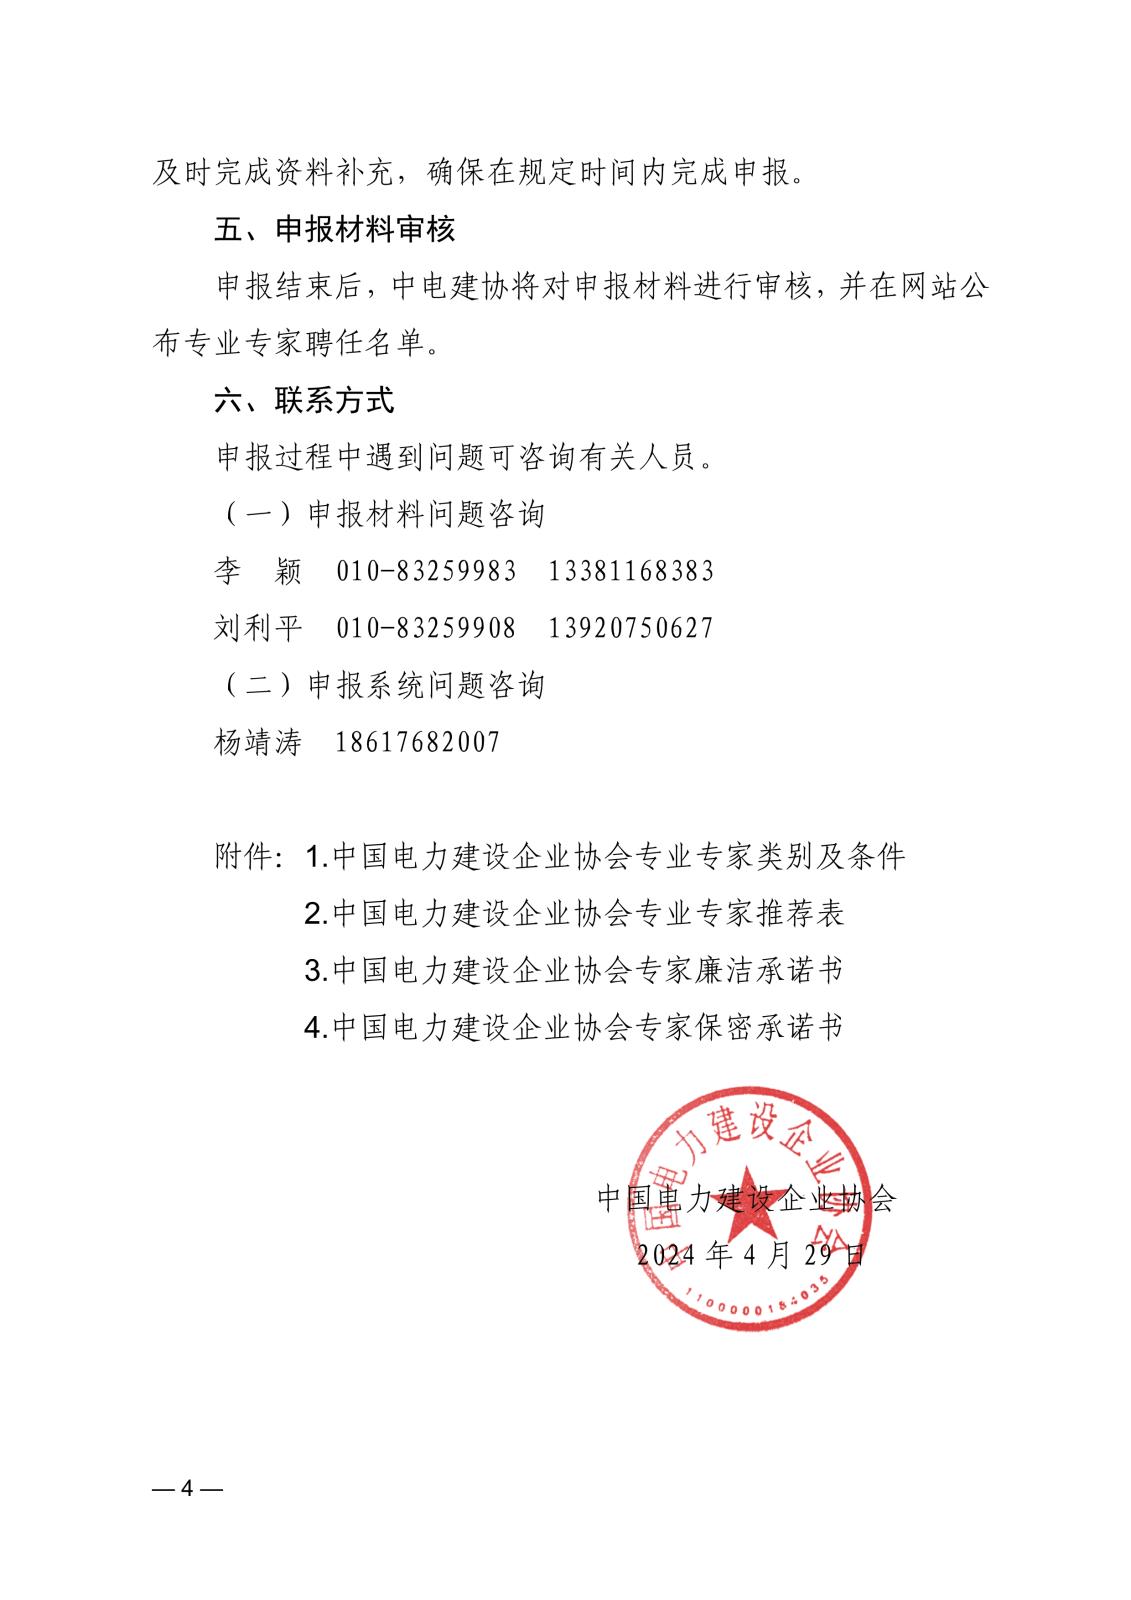 关于申报中国电力建设企业协会专业专家的通知_4.jpg